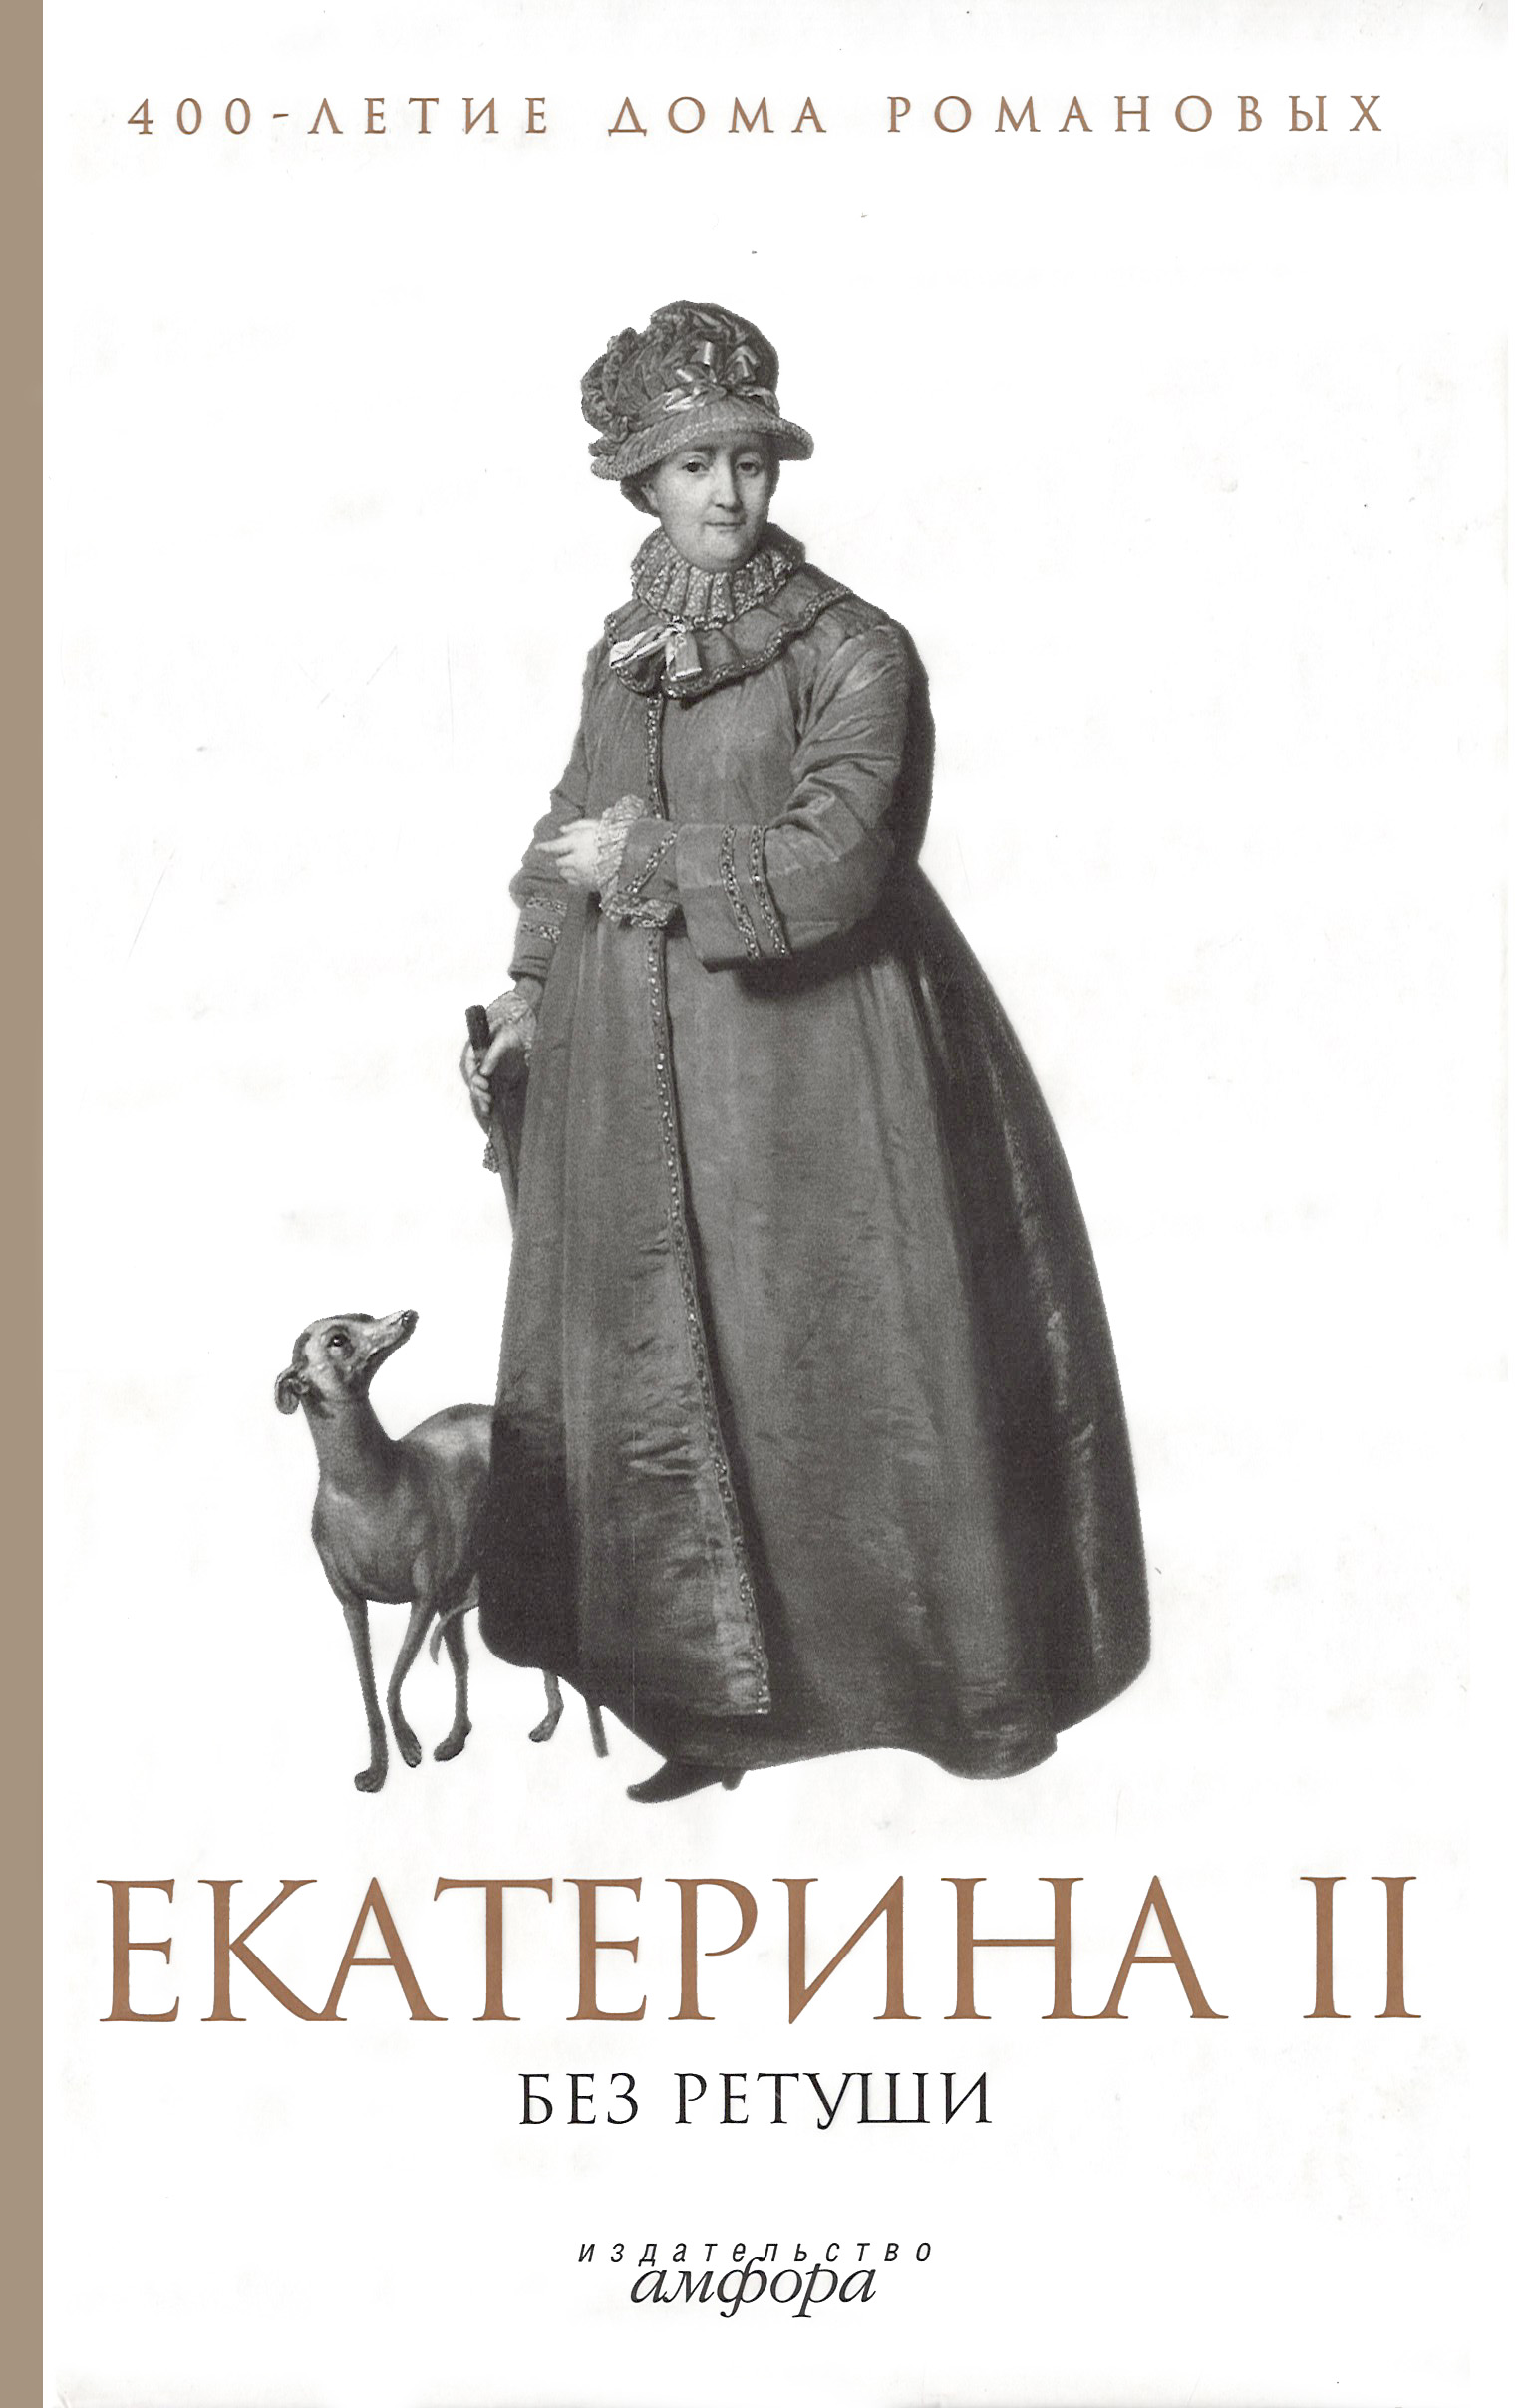 Екатерина II без ретуши. Антология